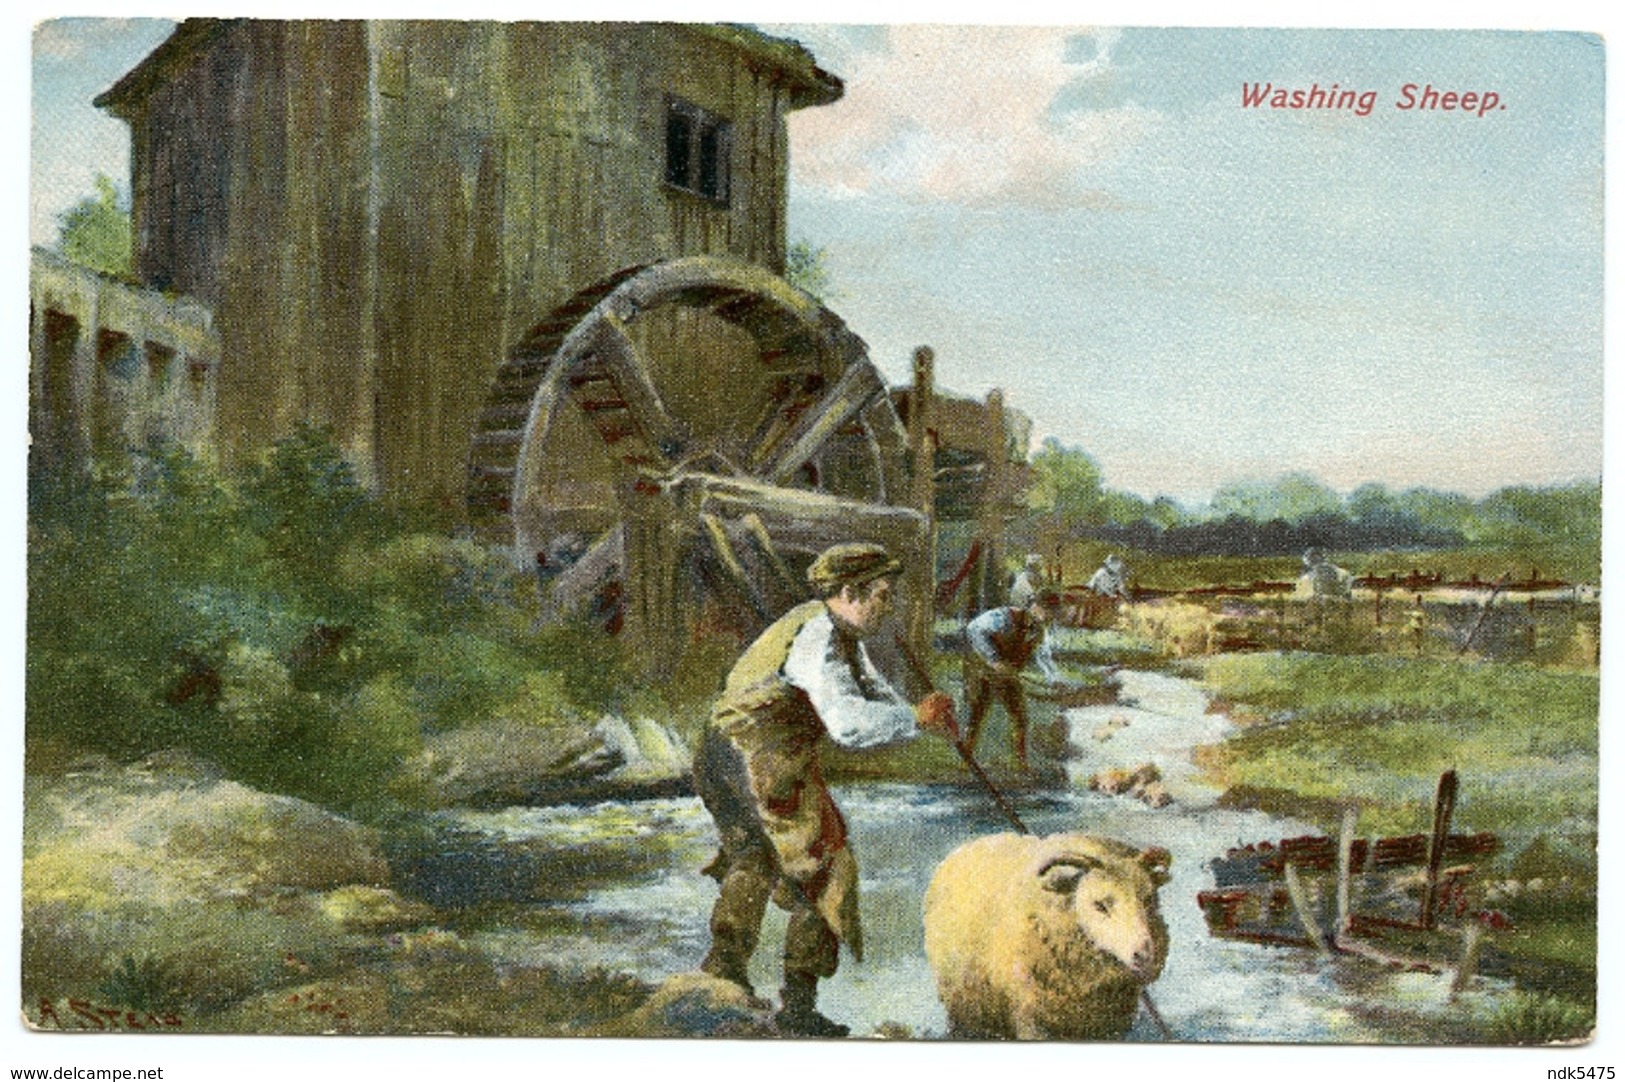 WASHING SHEEP / SHEEP DIP - Breeding